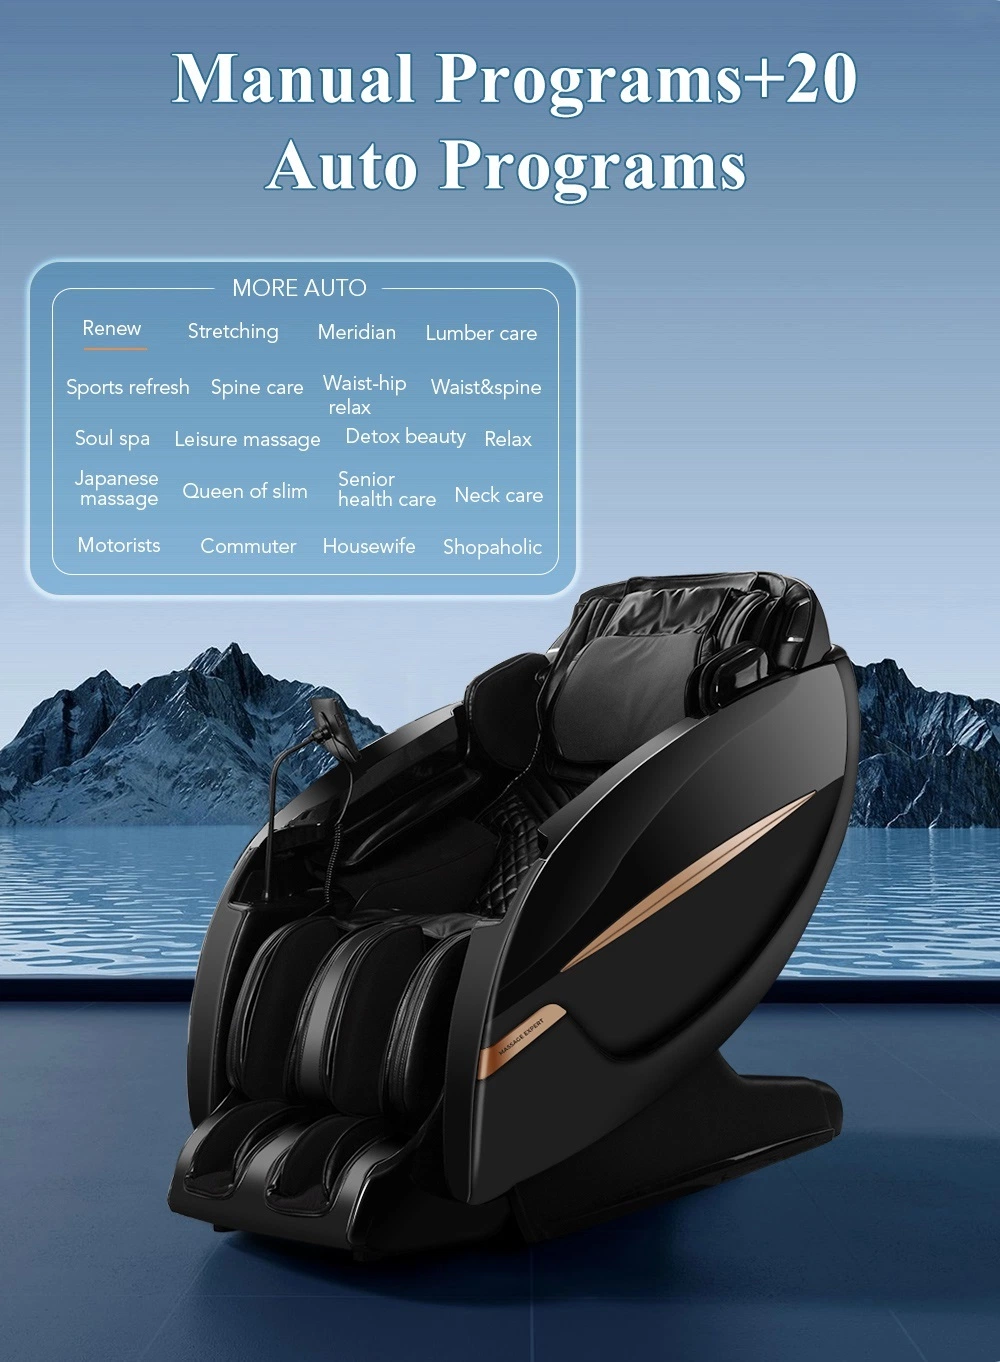 High End 4D Air Pressure Foot Massage Chair Cover